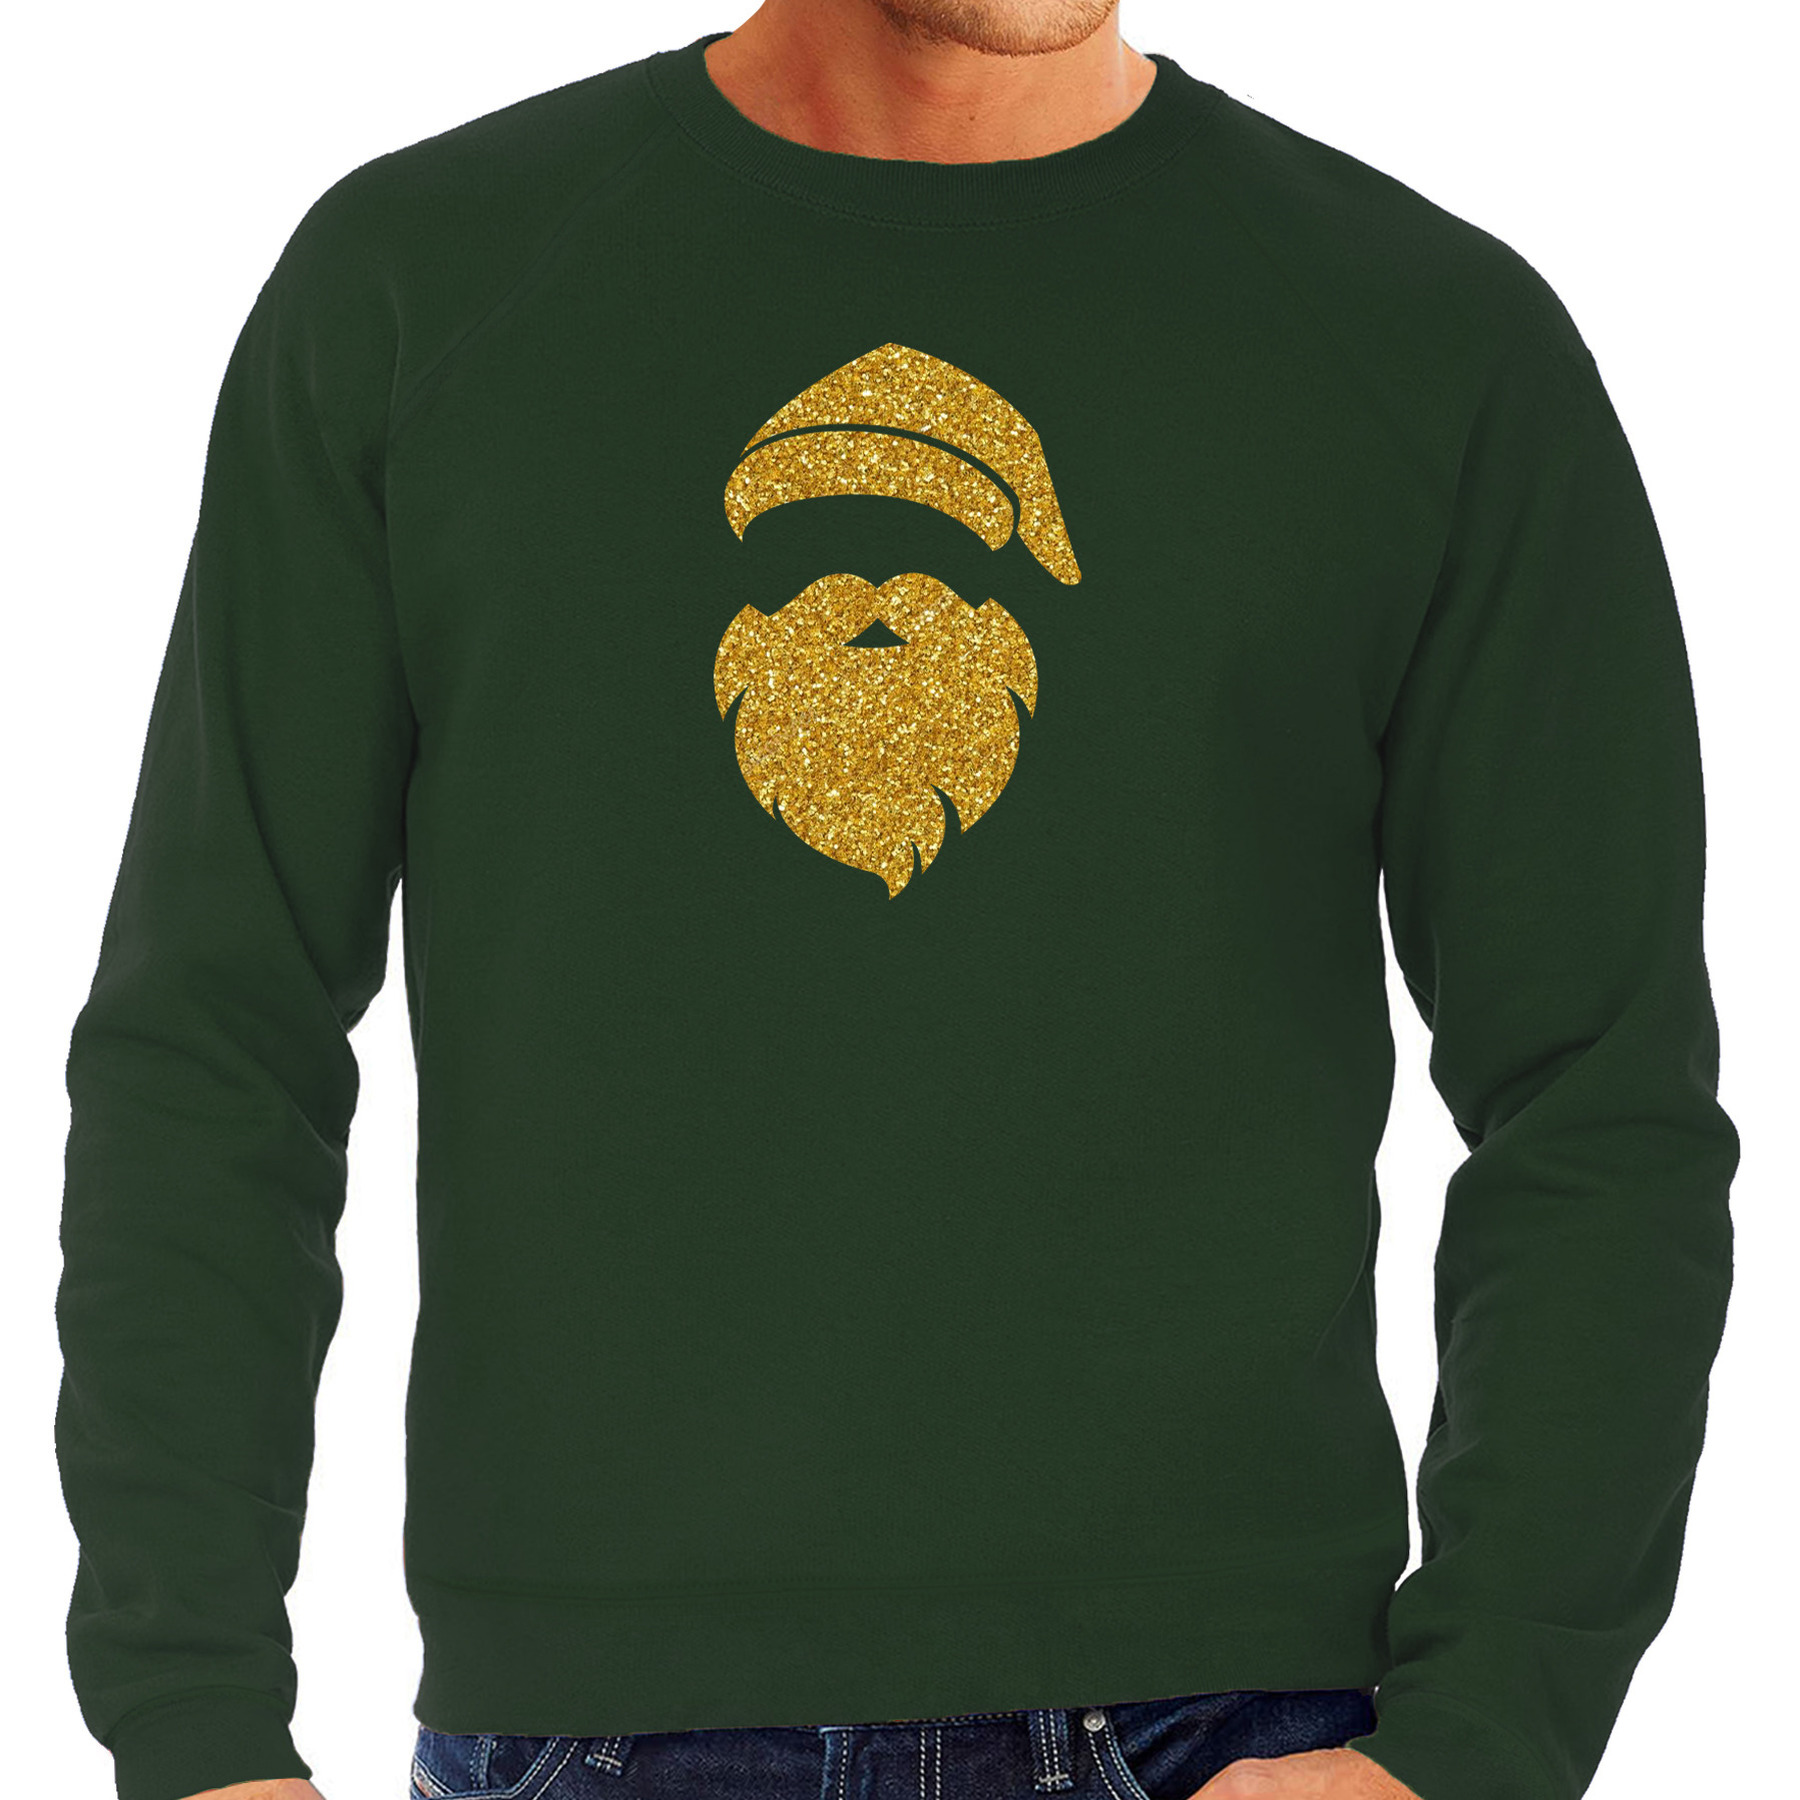 Kerstman hoofd Kerst sweater-trui groen voor heren met gouden glitter bedrukking